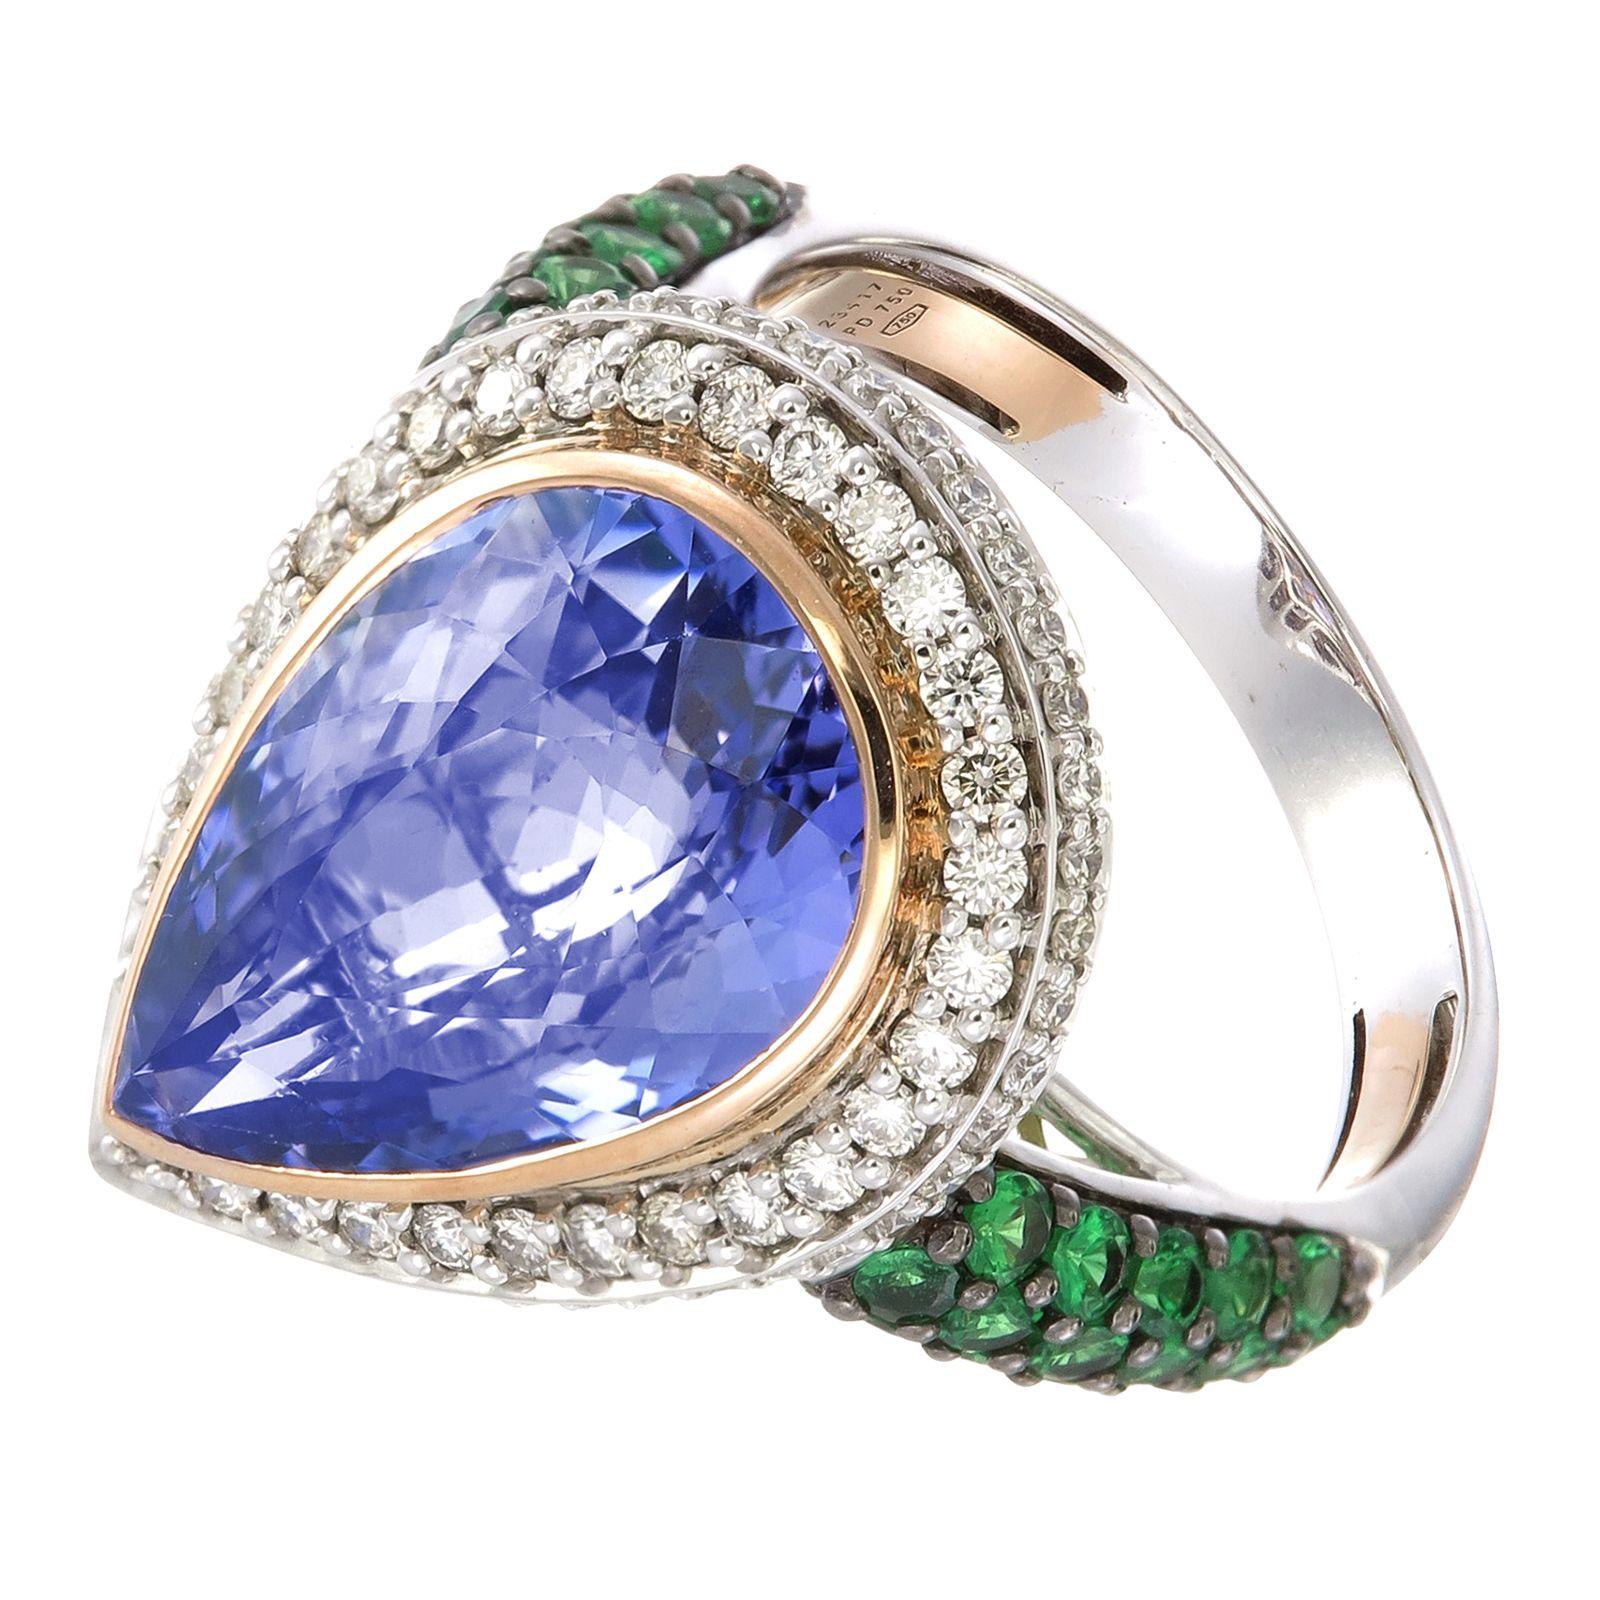 Ein 9,75-karätiger durchscheinender Tansanit wird von funkelnden 0,58-karätigen weißen Diamanten auf einem Ring aus Palladium und 18-karätigem Gold eingerahmt. Auf jeder Seite des Schafts befindet sich ein minziger Spritzer hellen Grüns aus 0,93